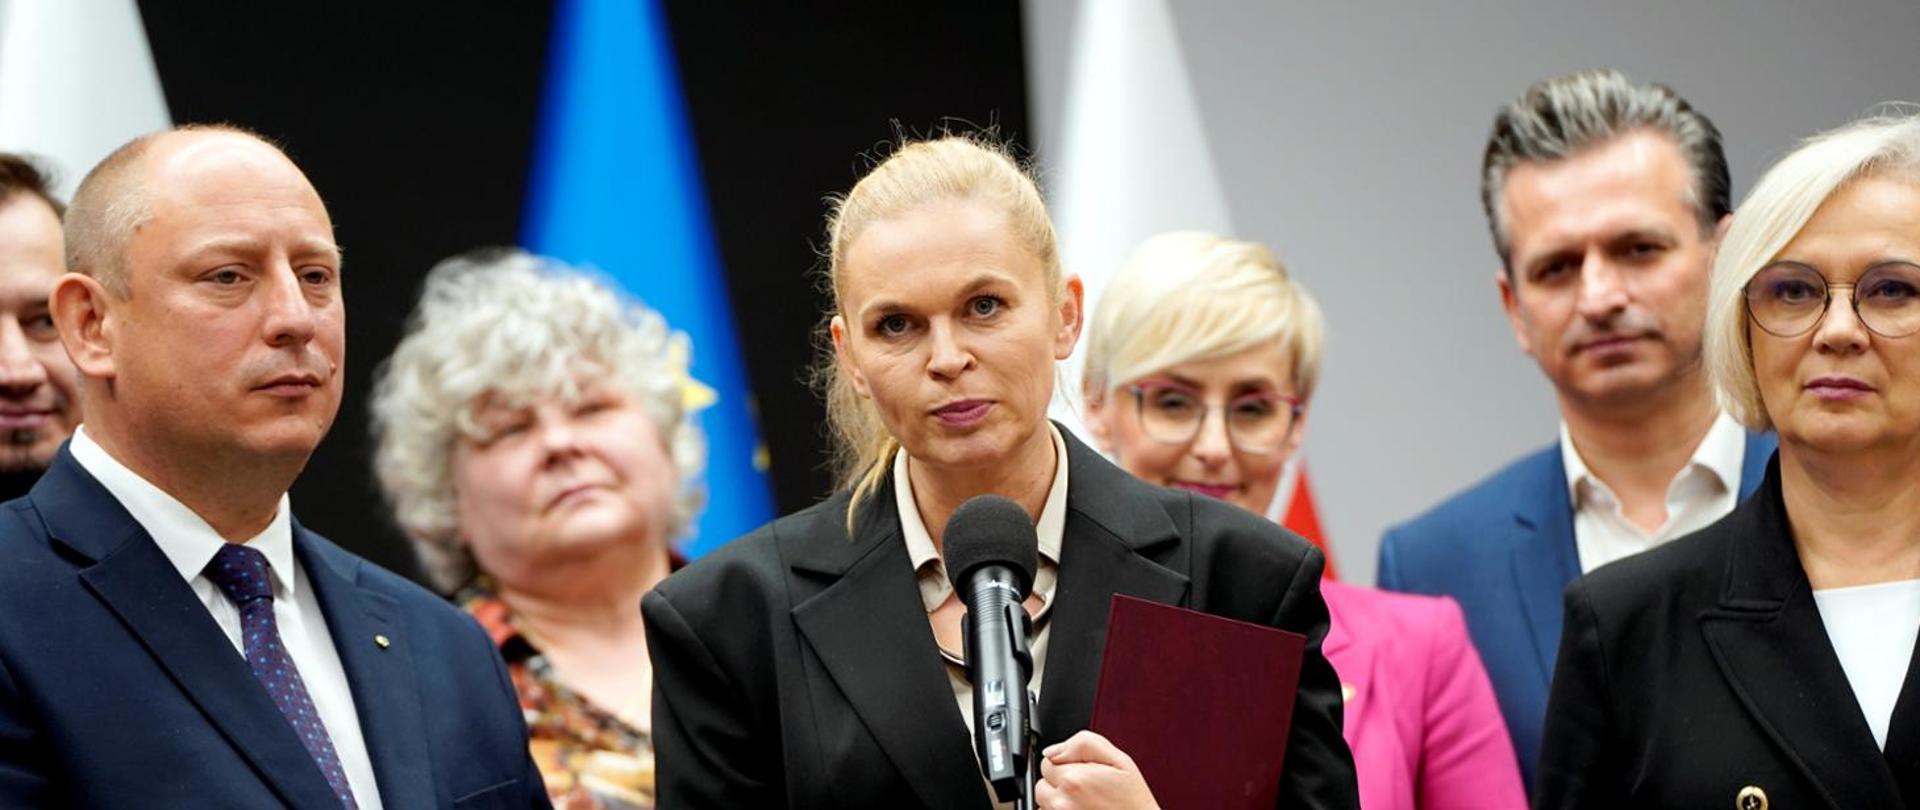 Minister Nowacka stoi przed mikrofonem na stojaku, w ręku trzyma fioletową teczkę, dookoła niej kilka osób.